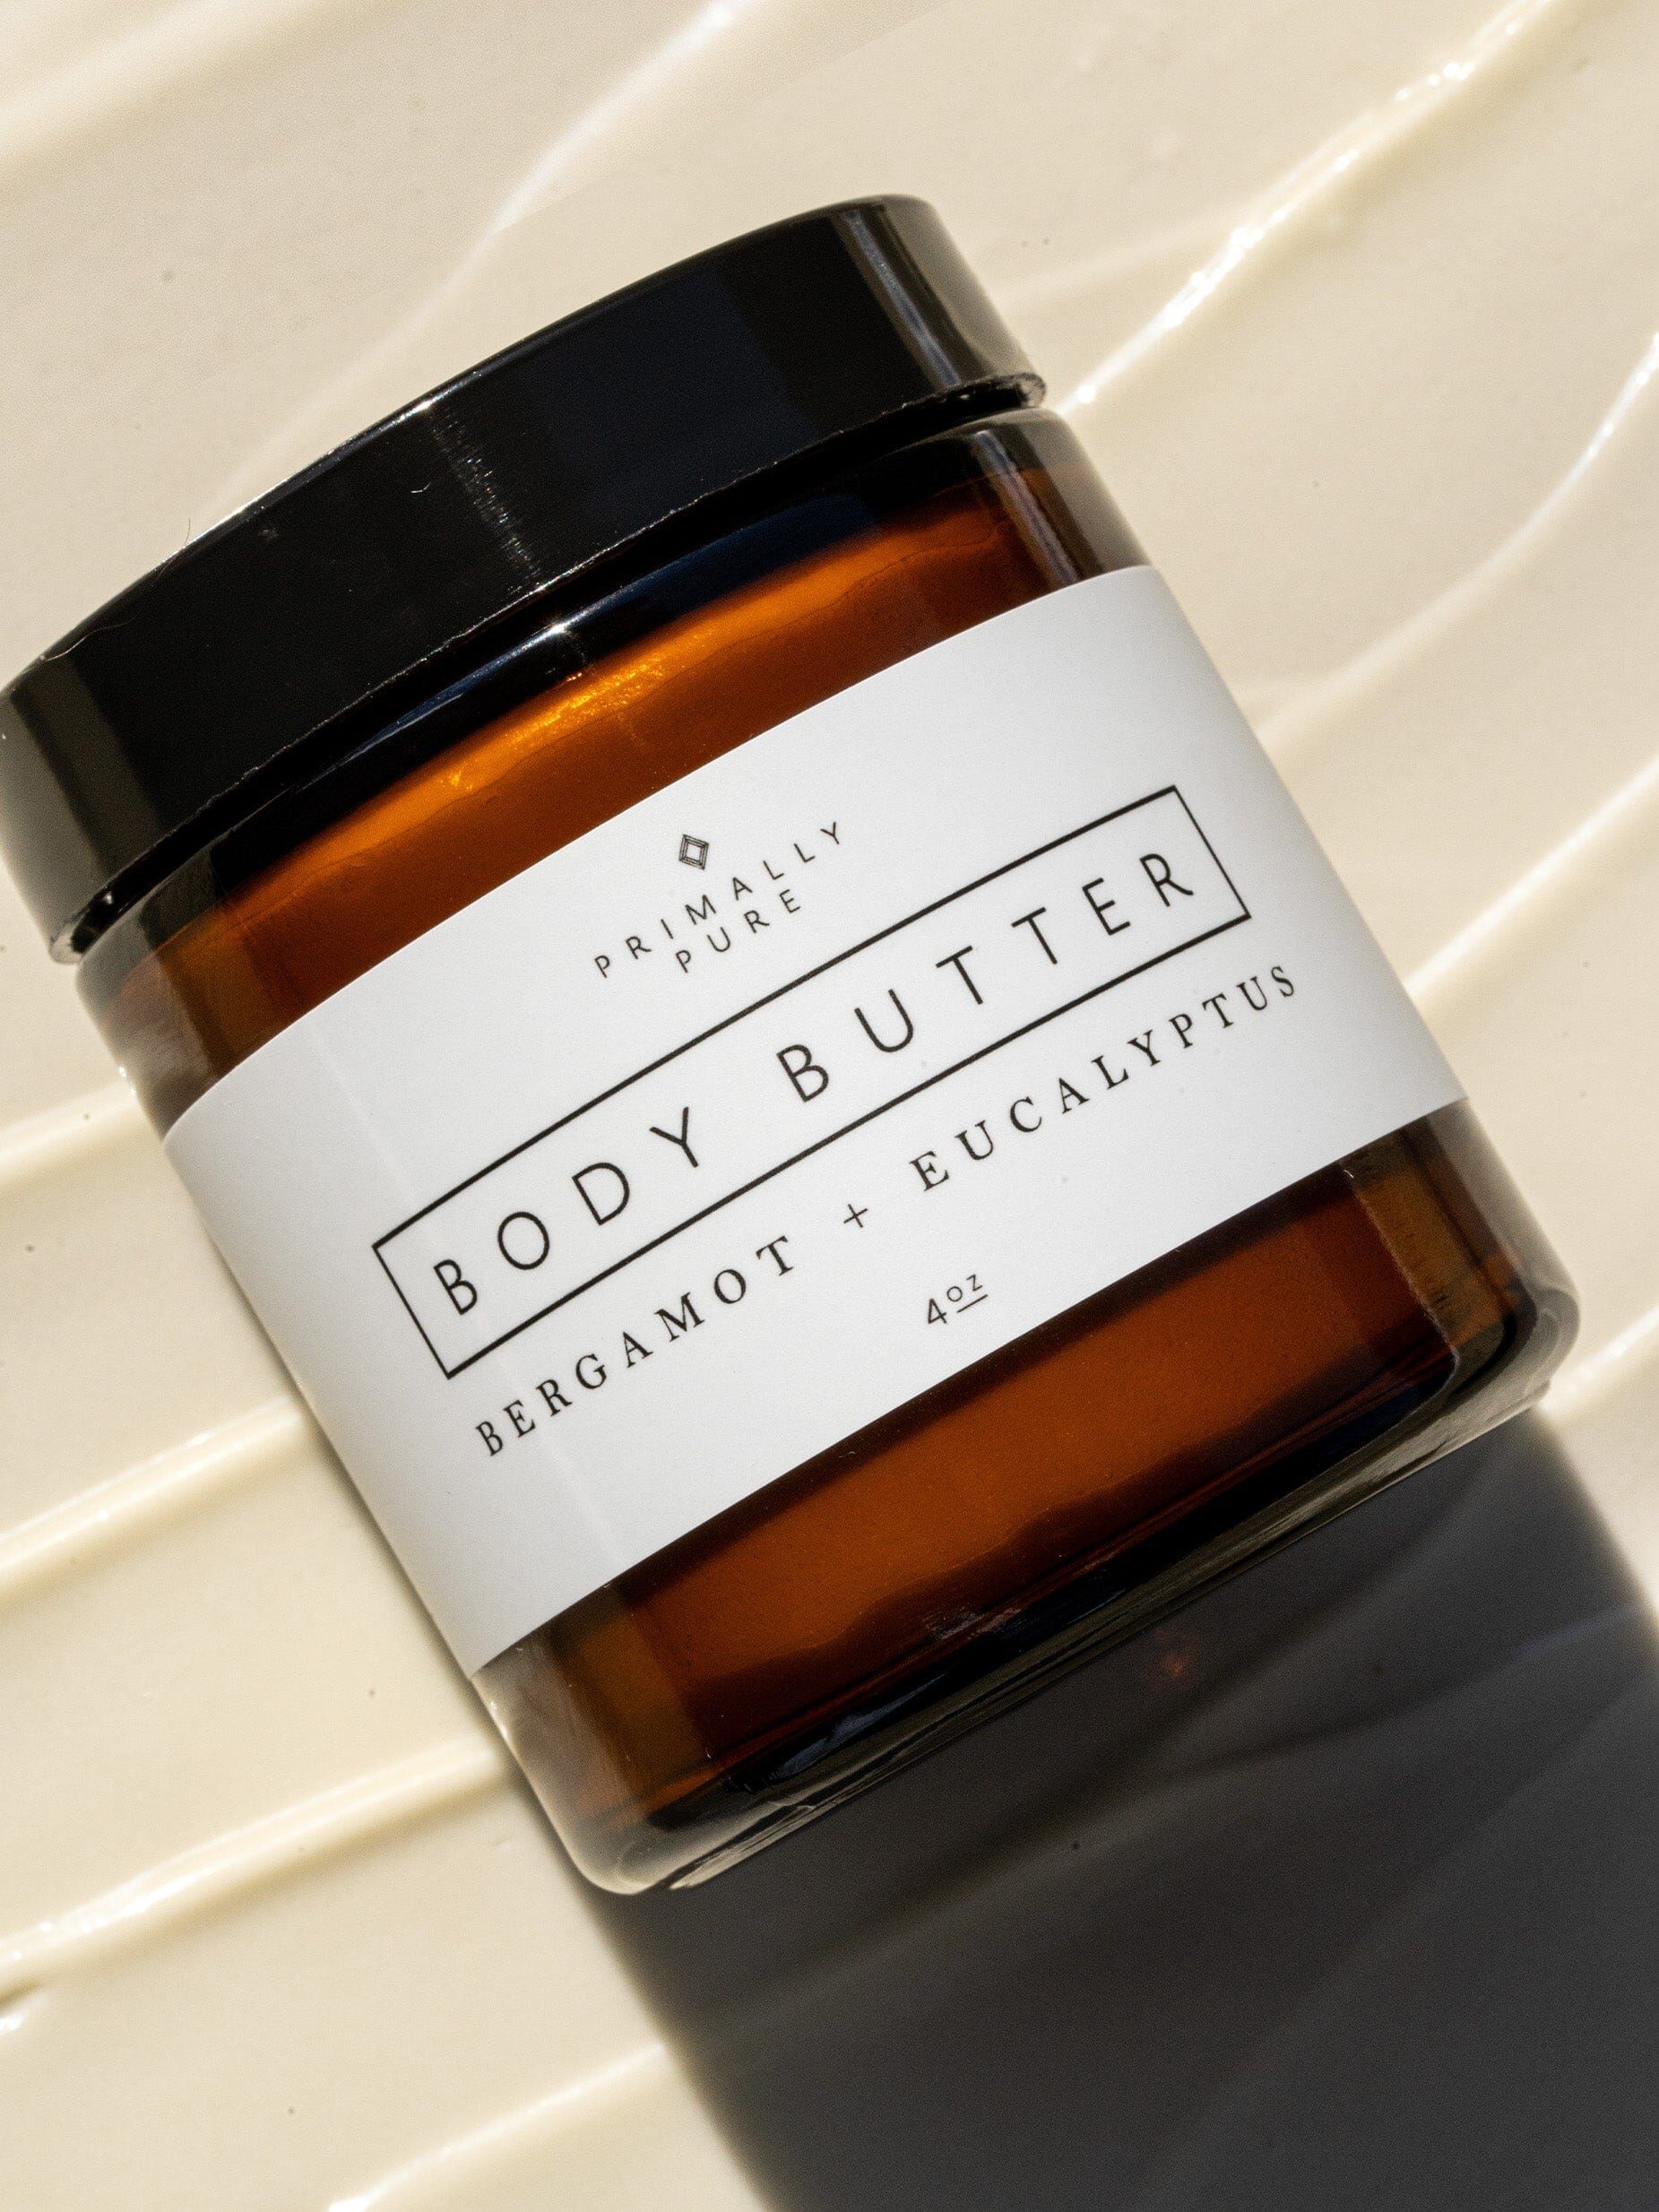 Bergamot + Eucalyptus Whipped Body Butter | Primally Pure